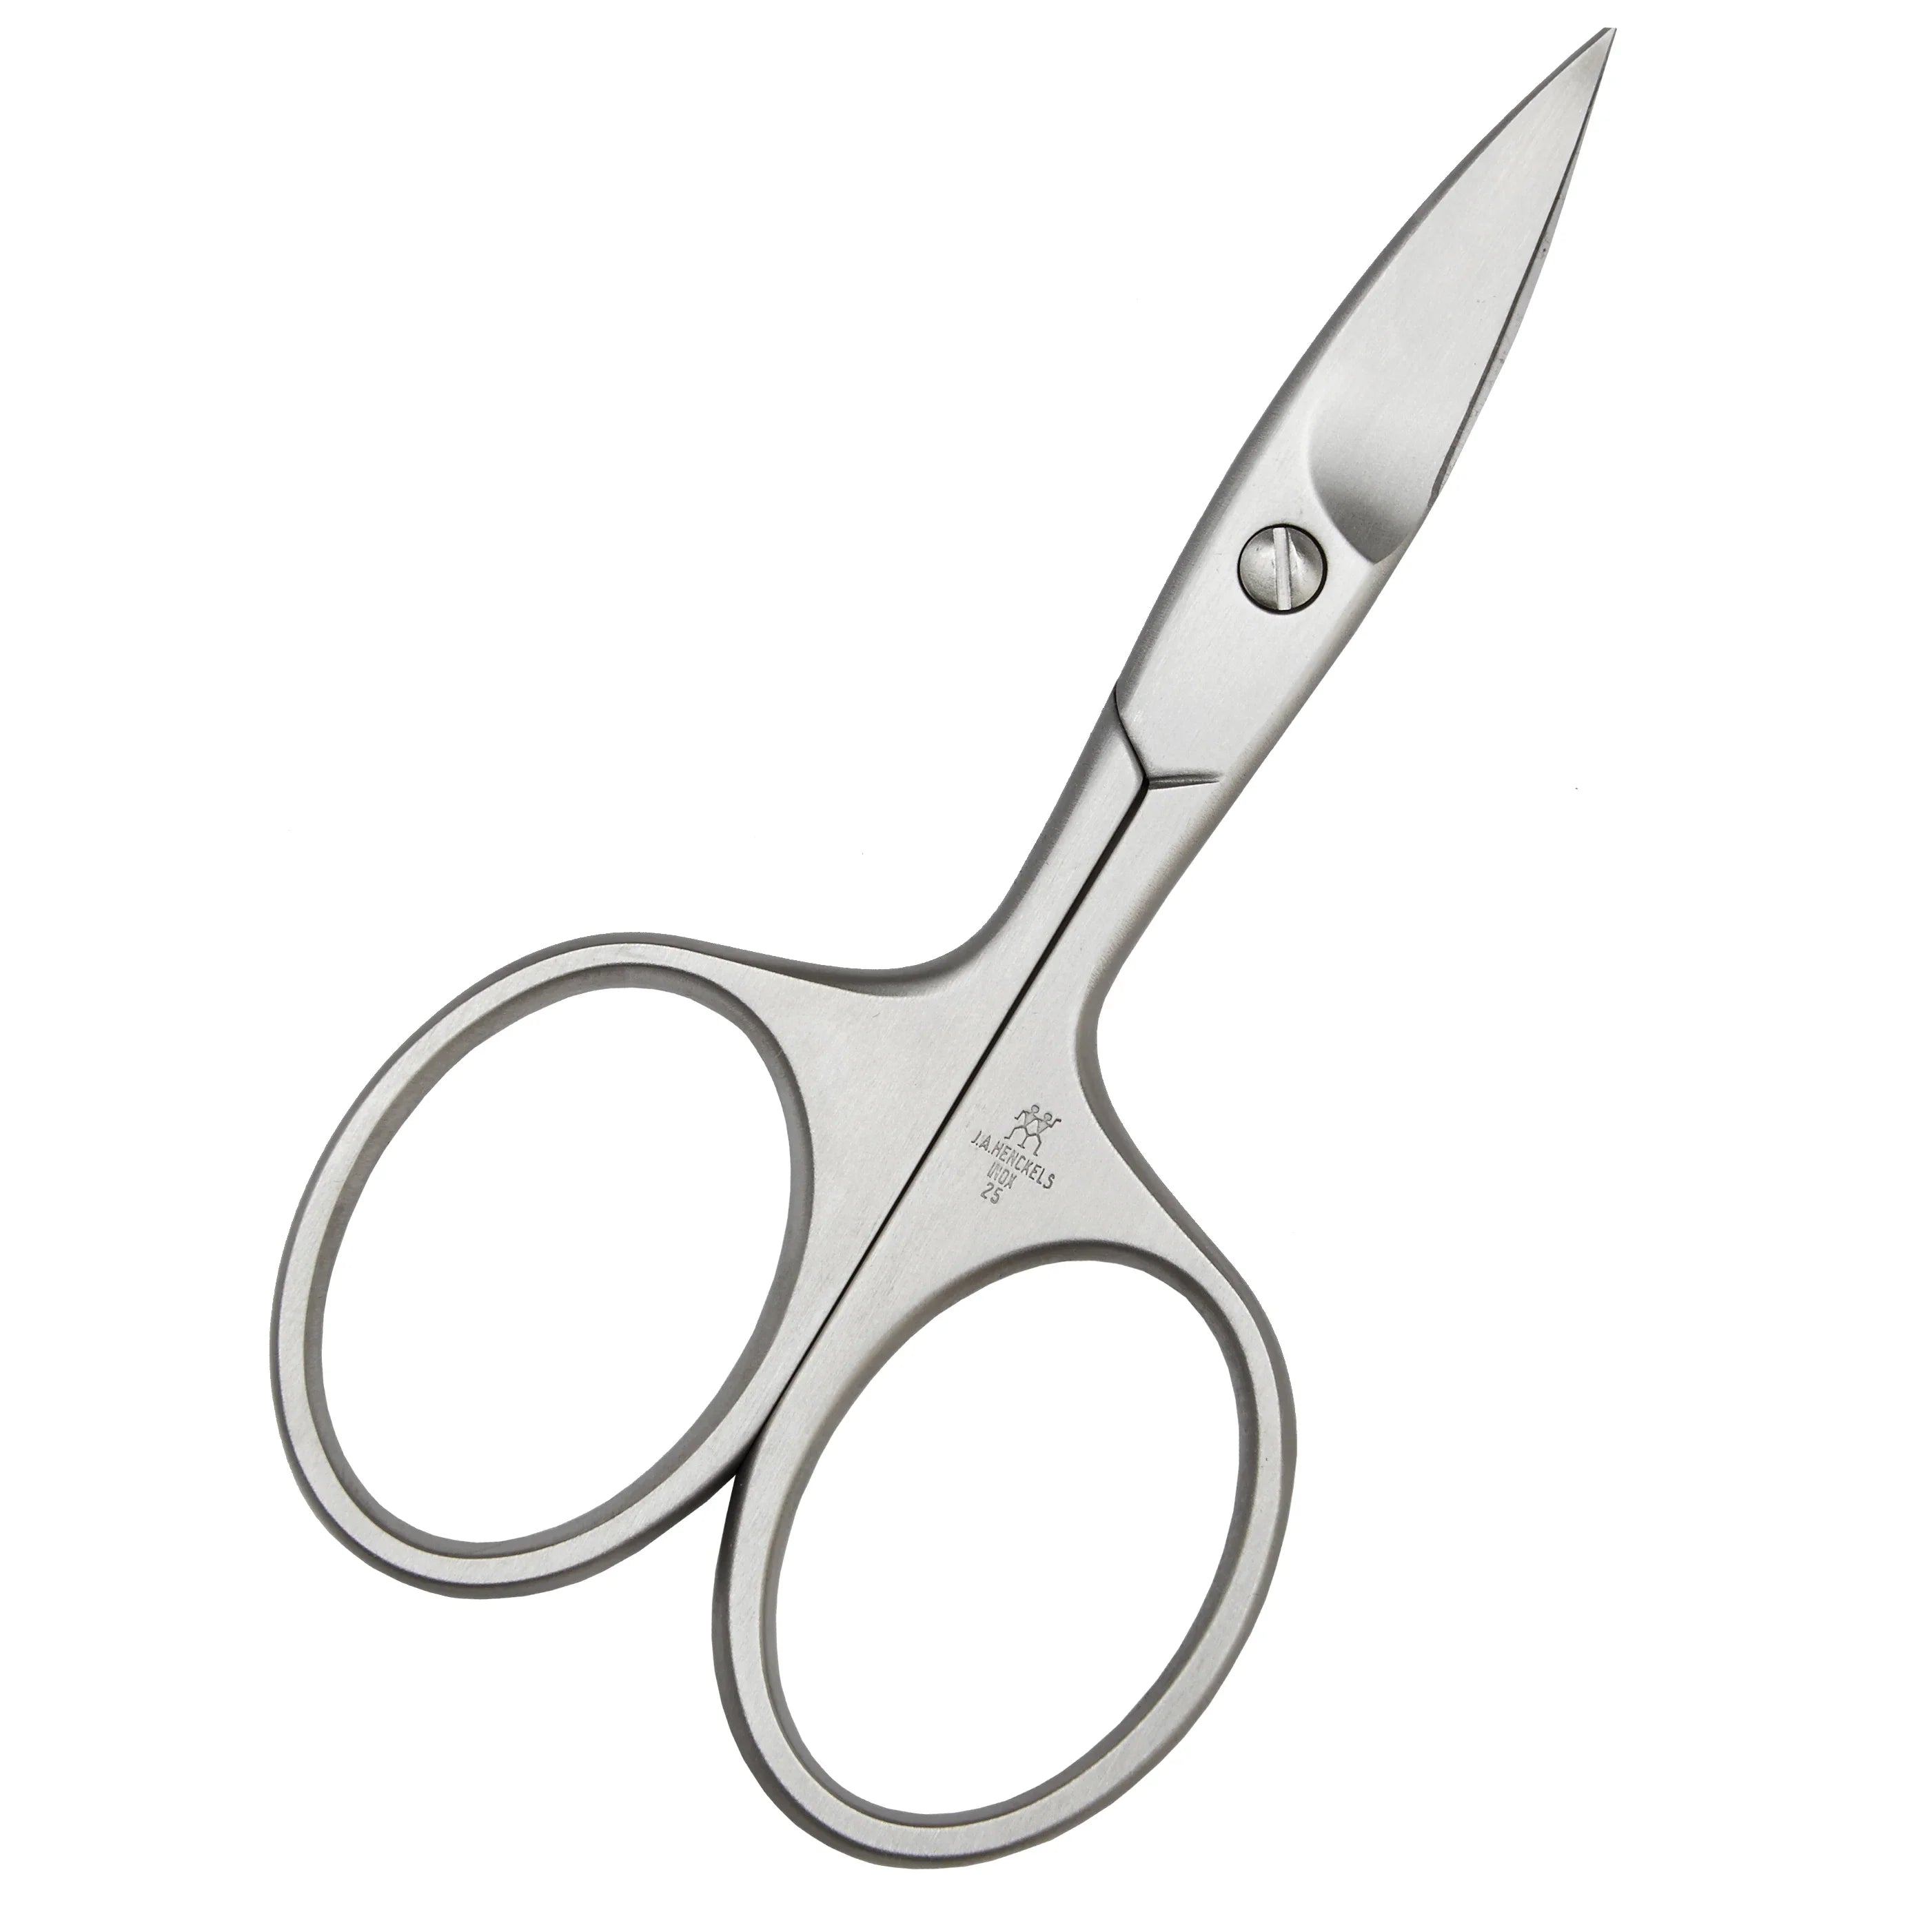 Zwilling Twinox nail scissors 9 cm - silver matt finish